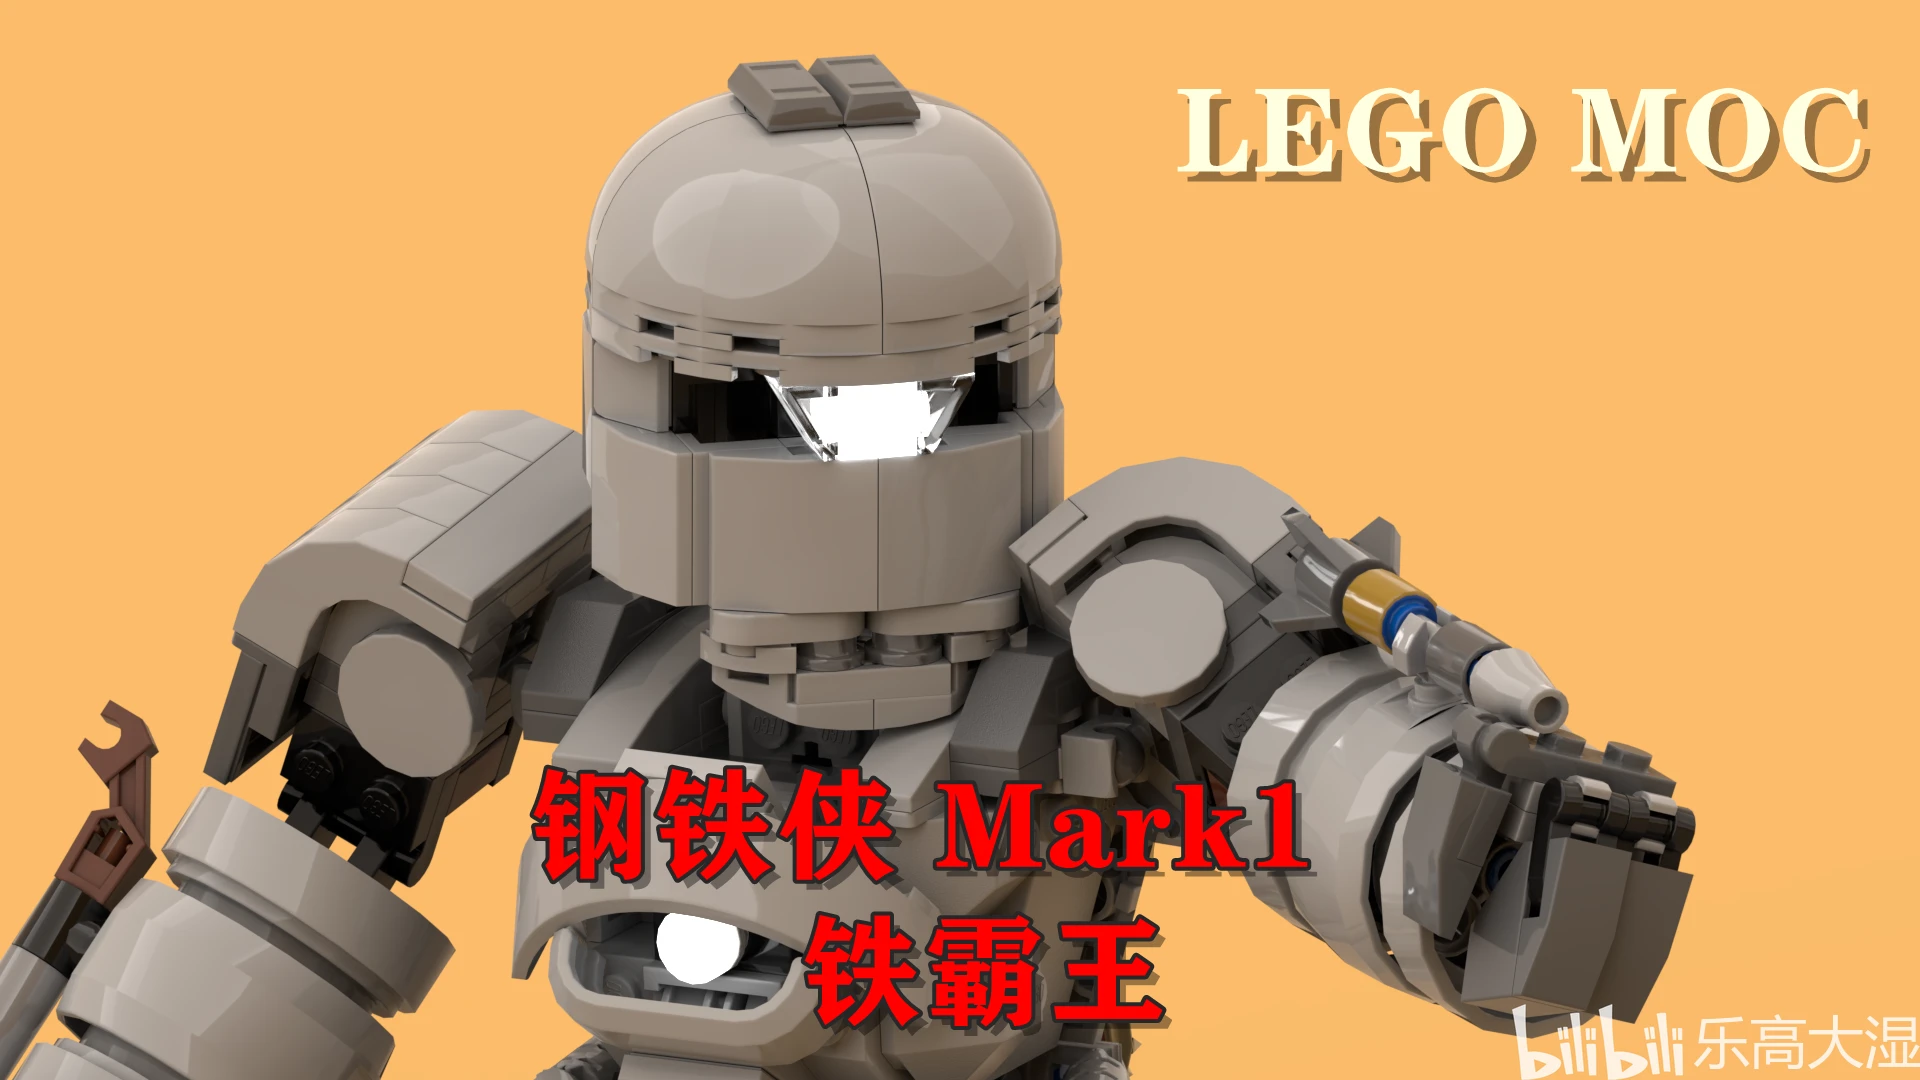 LEGO MOC 钢铁侠Mark1 铁霸王